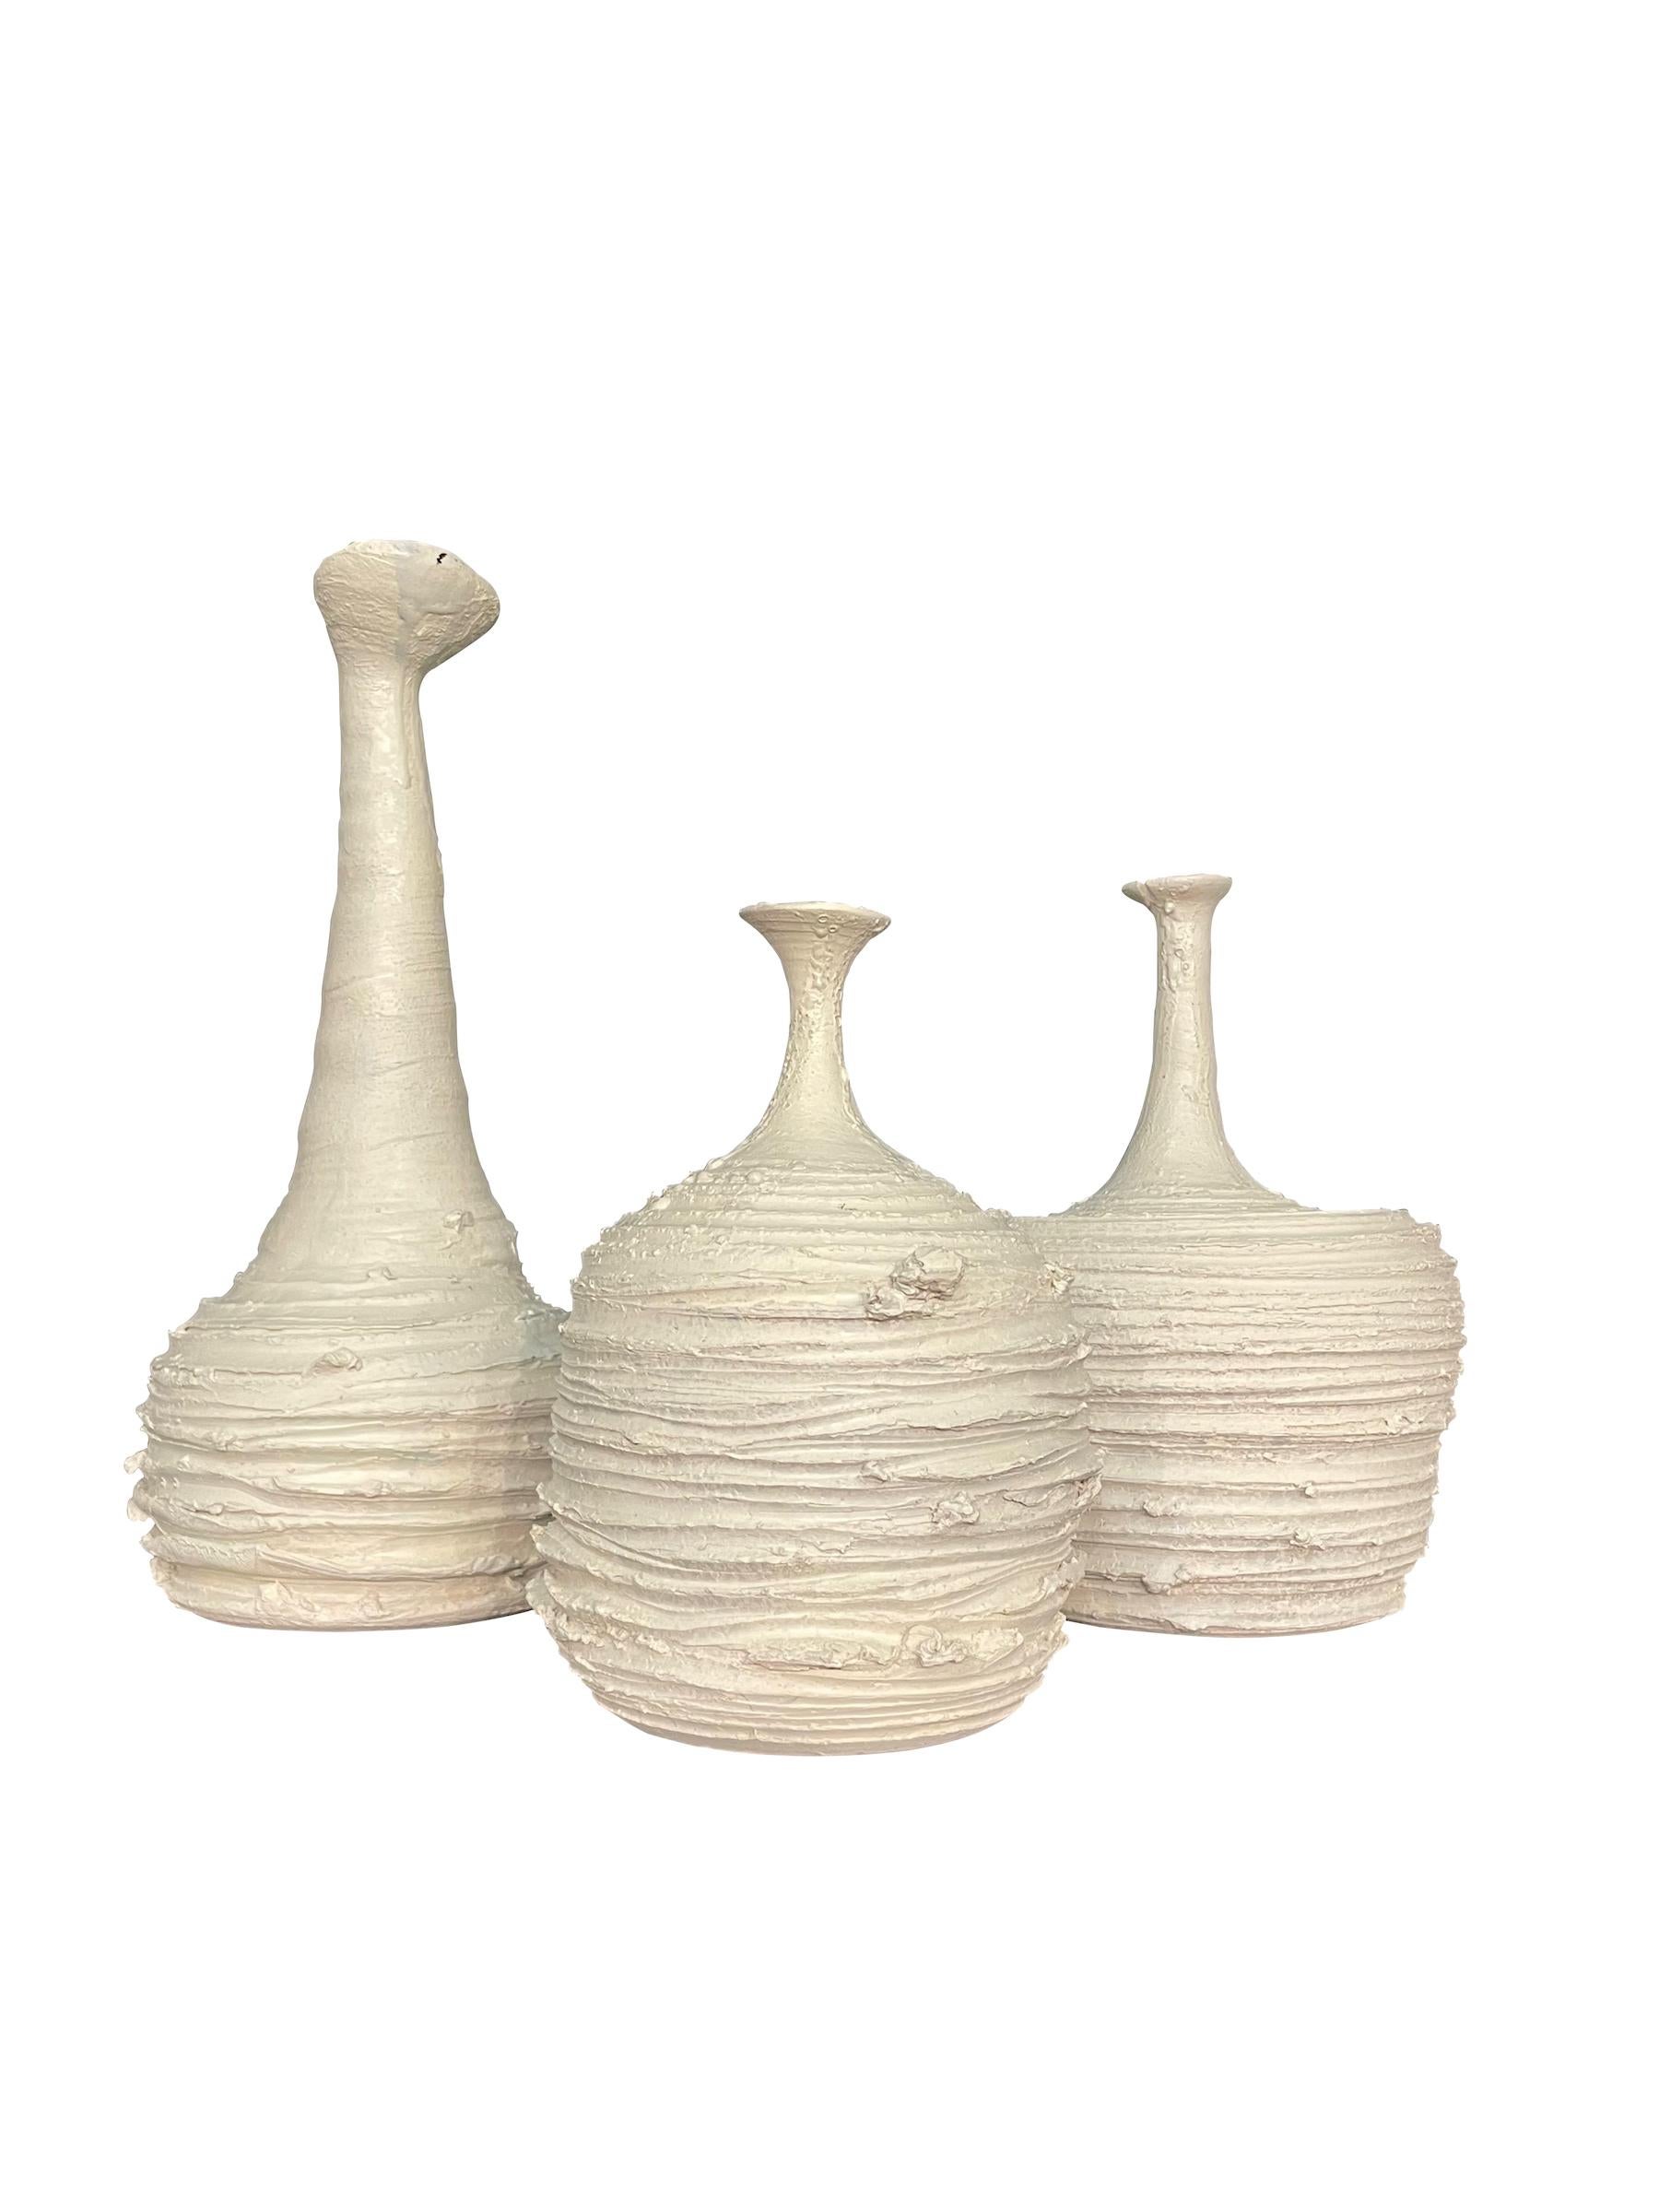 Ceramic White Brutalist Design Vase, Italy, Contemporary